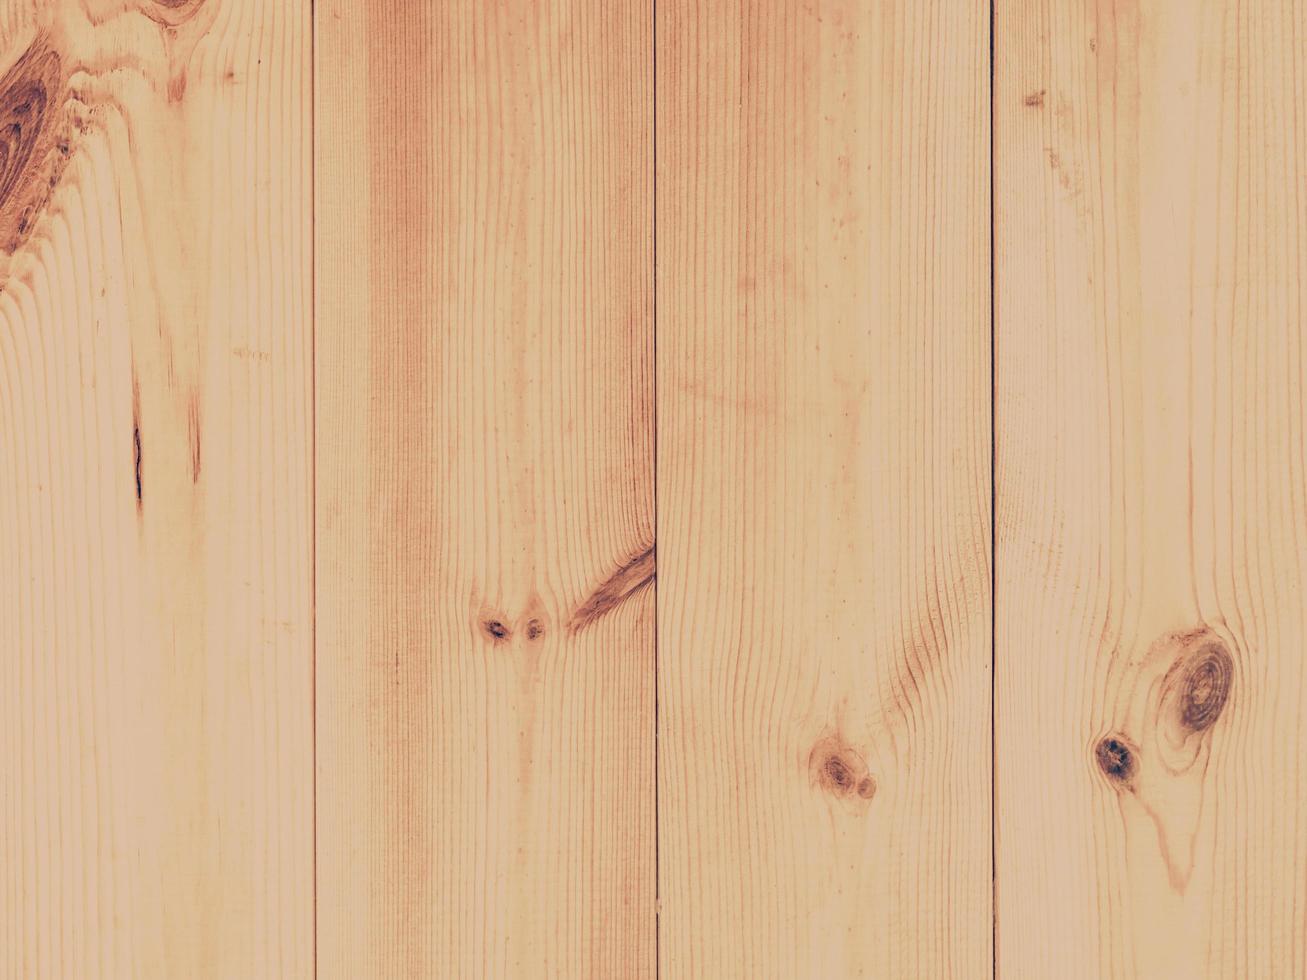 de madera pared o de madera piso con Clásico filtrar. foto